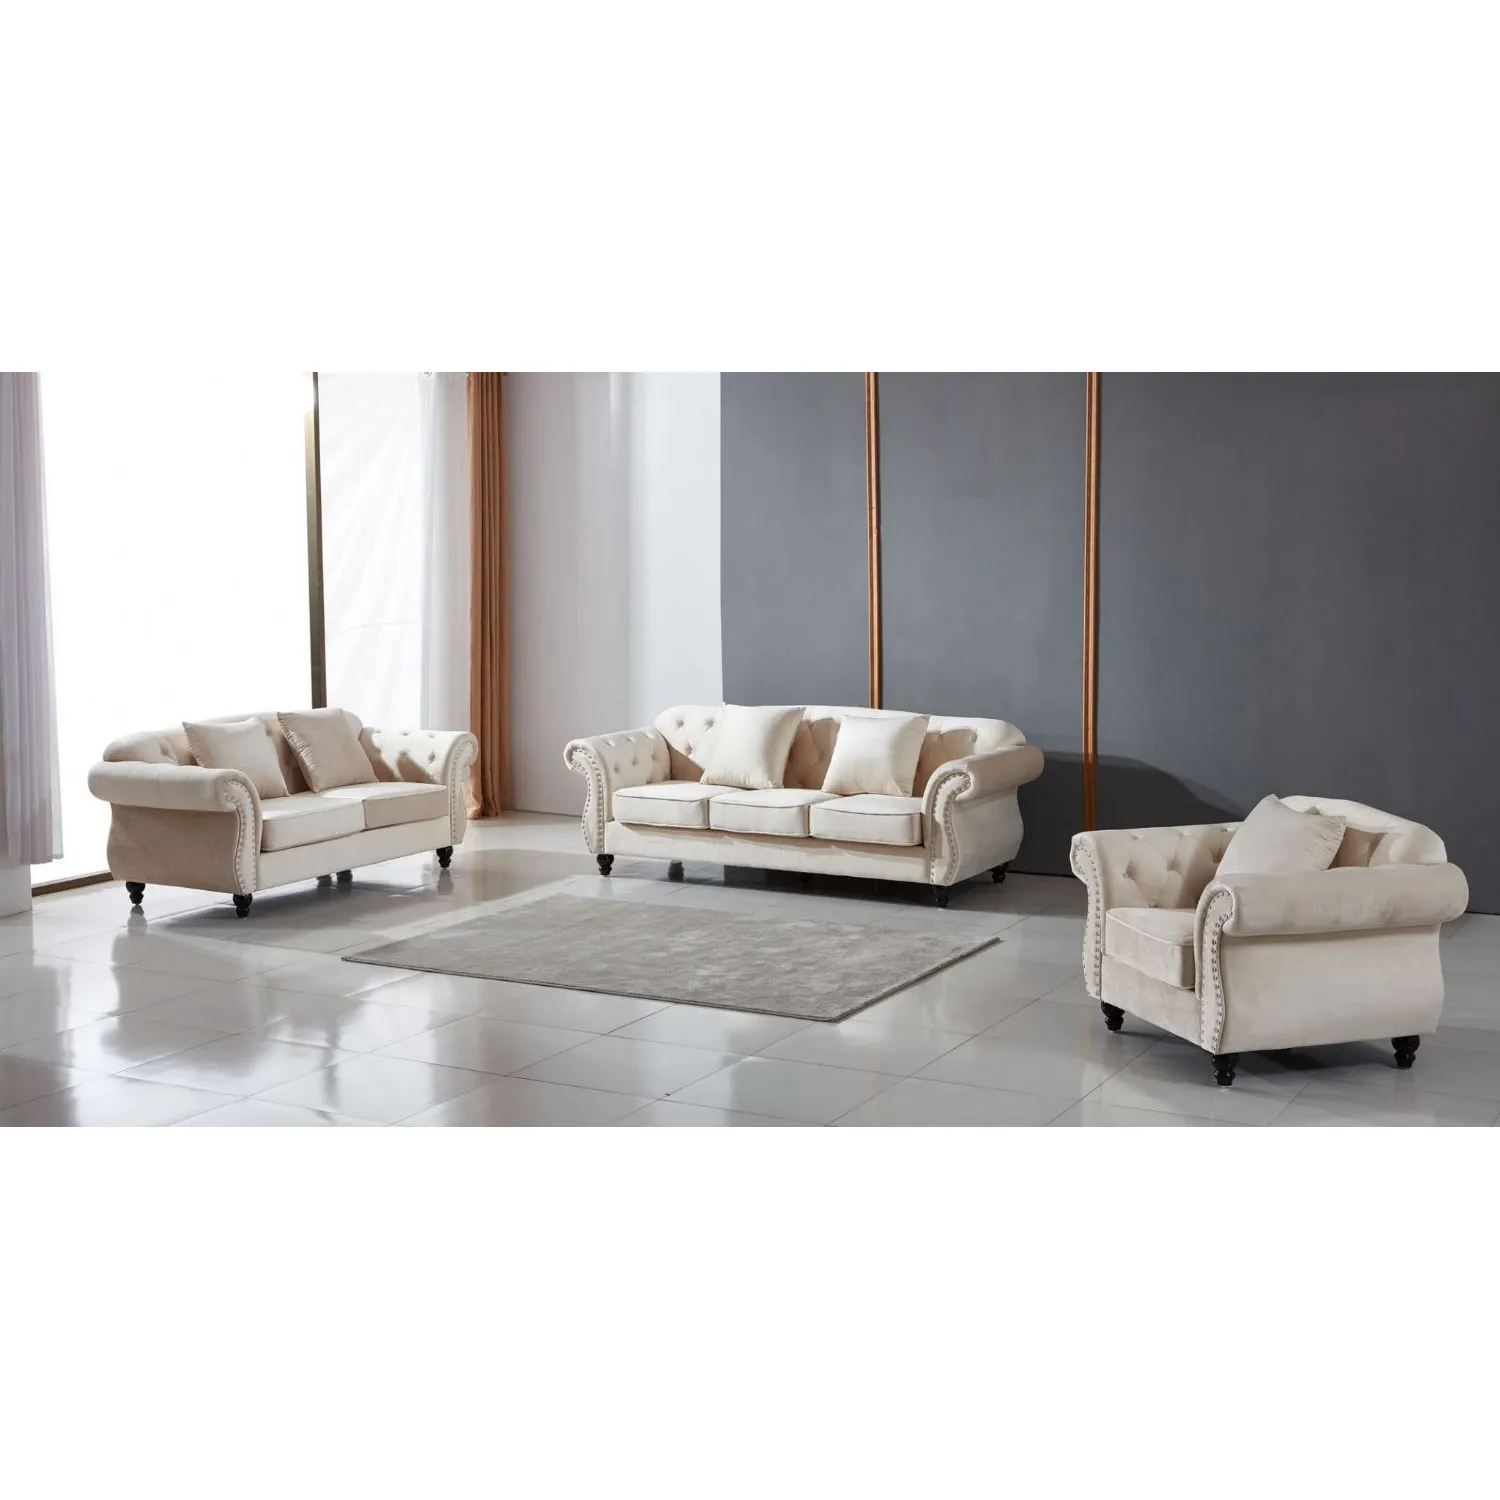 Arabella Sofa Suite In Plush Velvet Beige 3 + 2 + 1 Seater